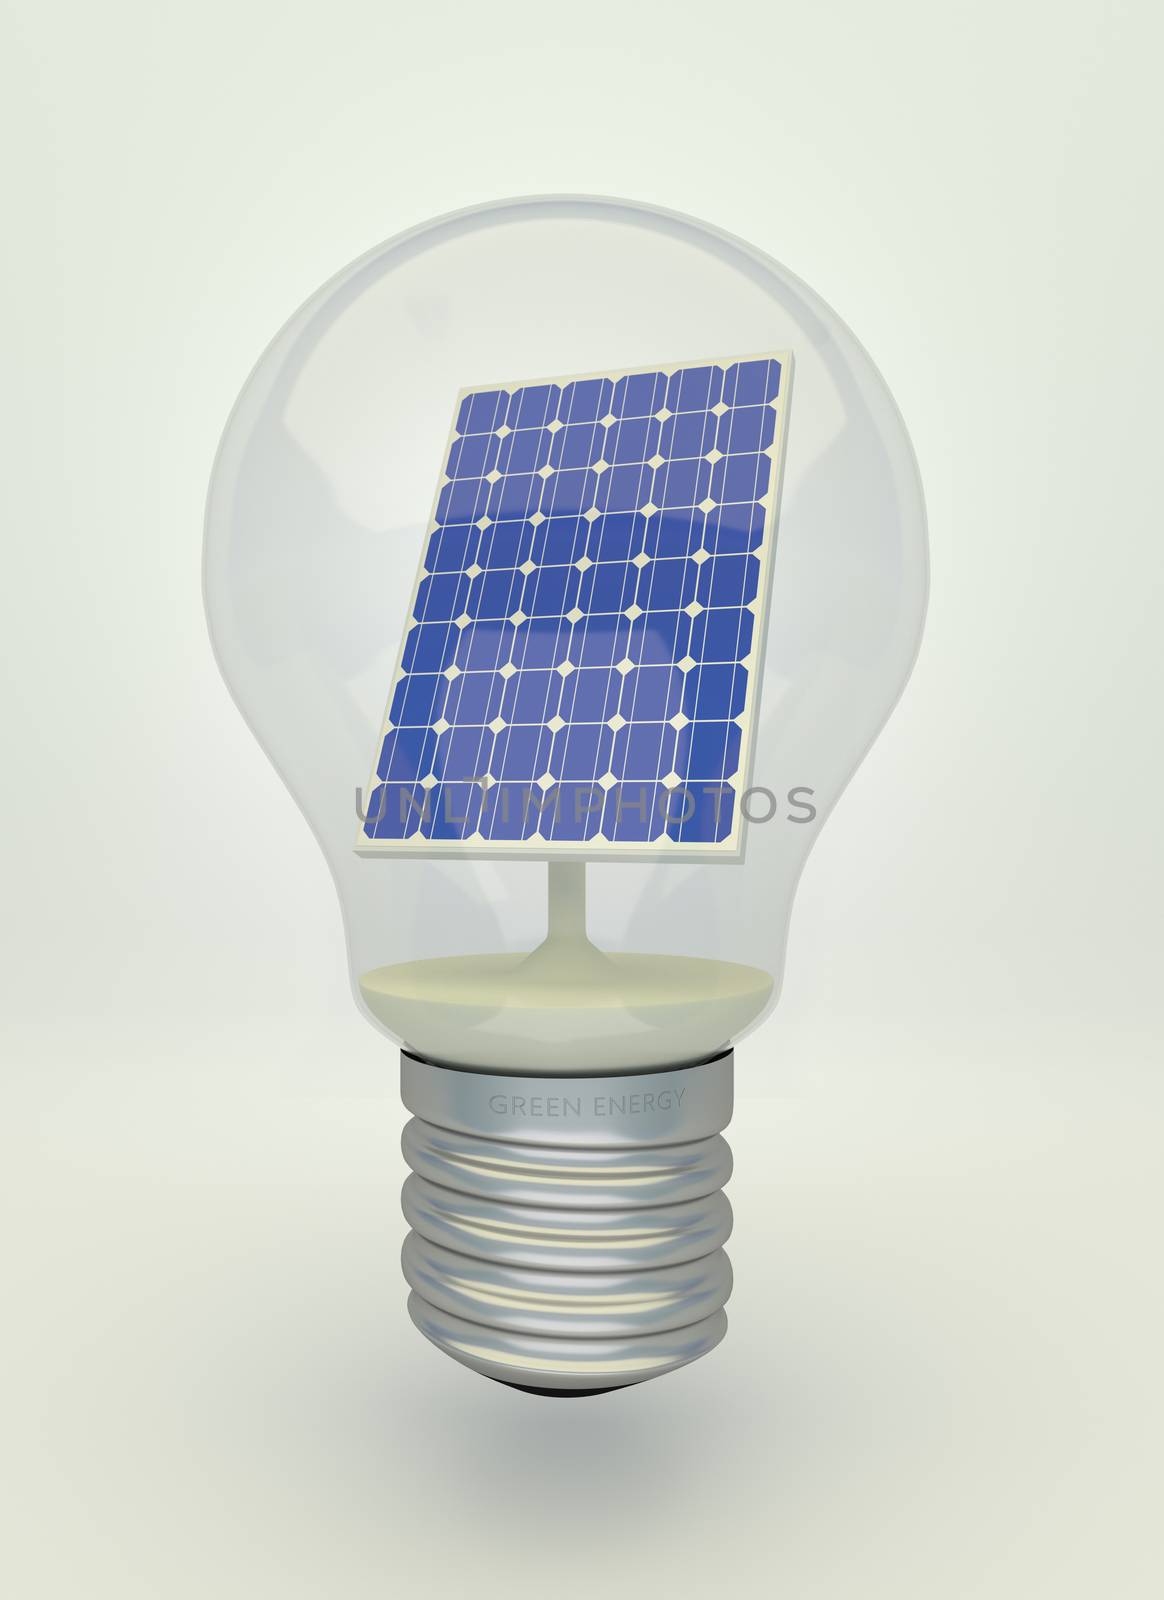 Solar panel in light bulb by Barbraford